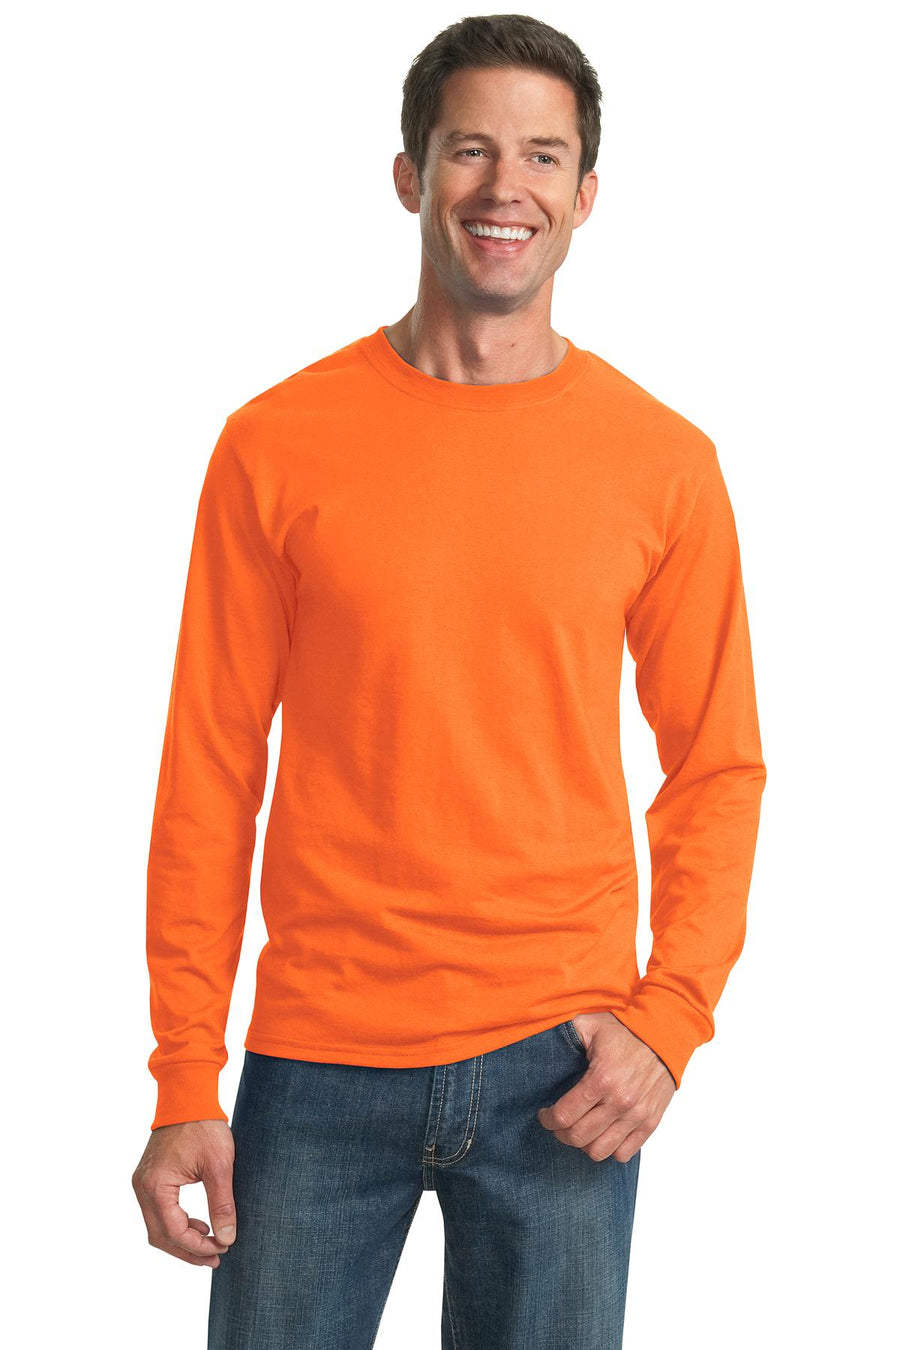 29LS-Safety Orange-front_model